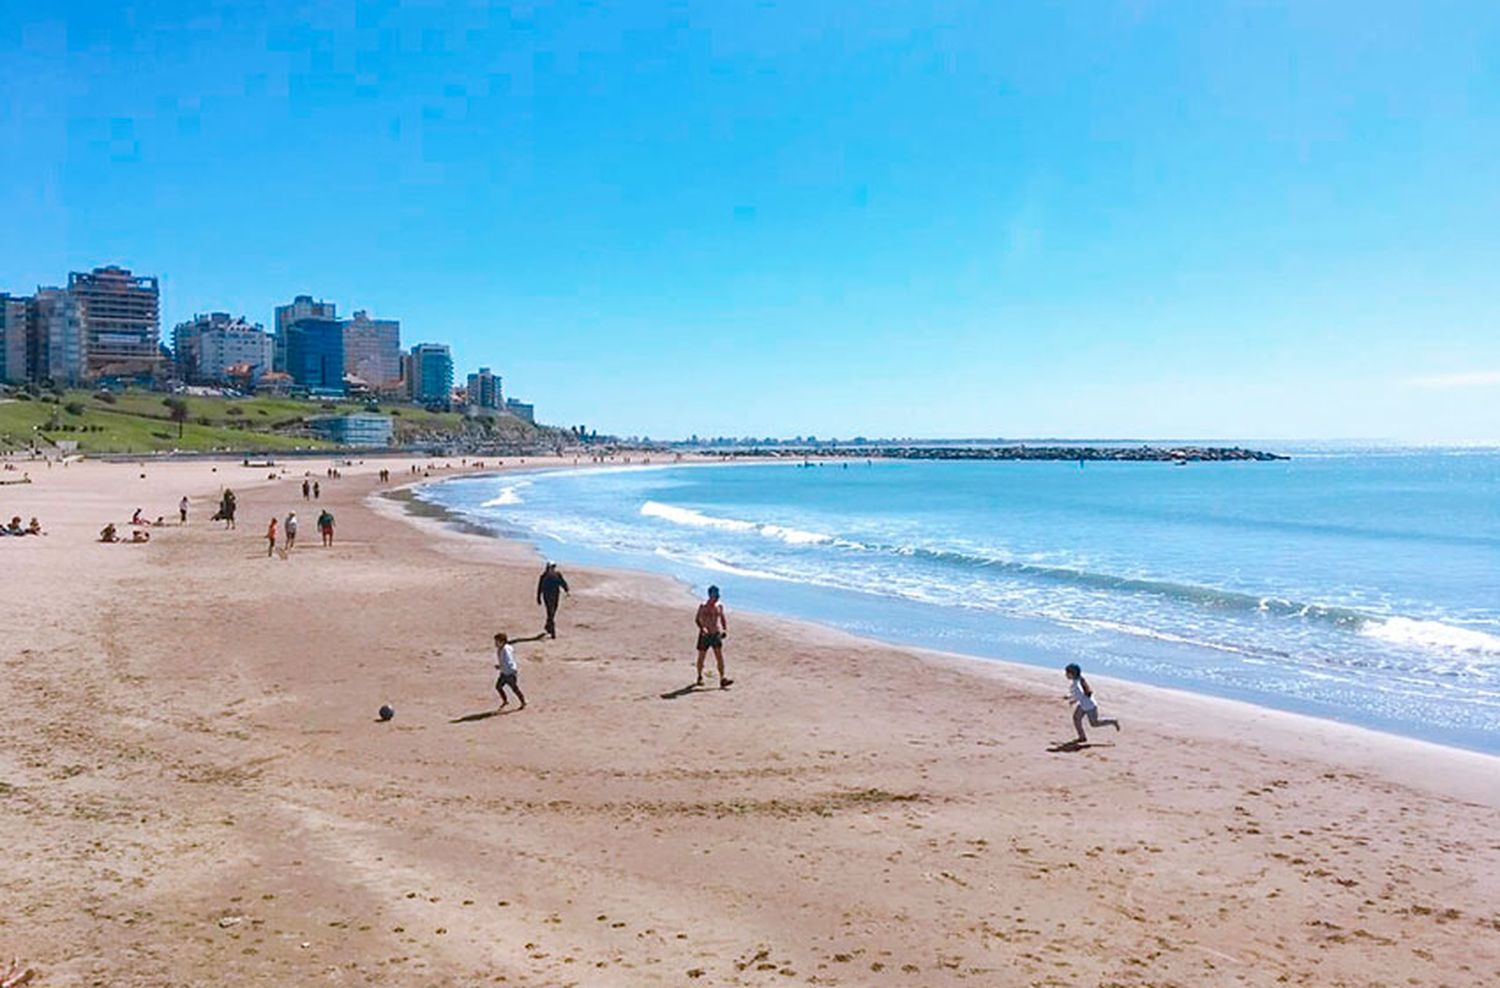 Se adelantó el verano: 31 grados de máxima en Mar del Plata